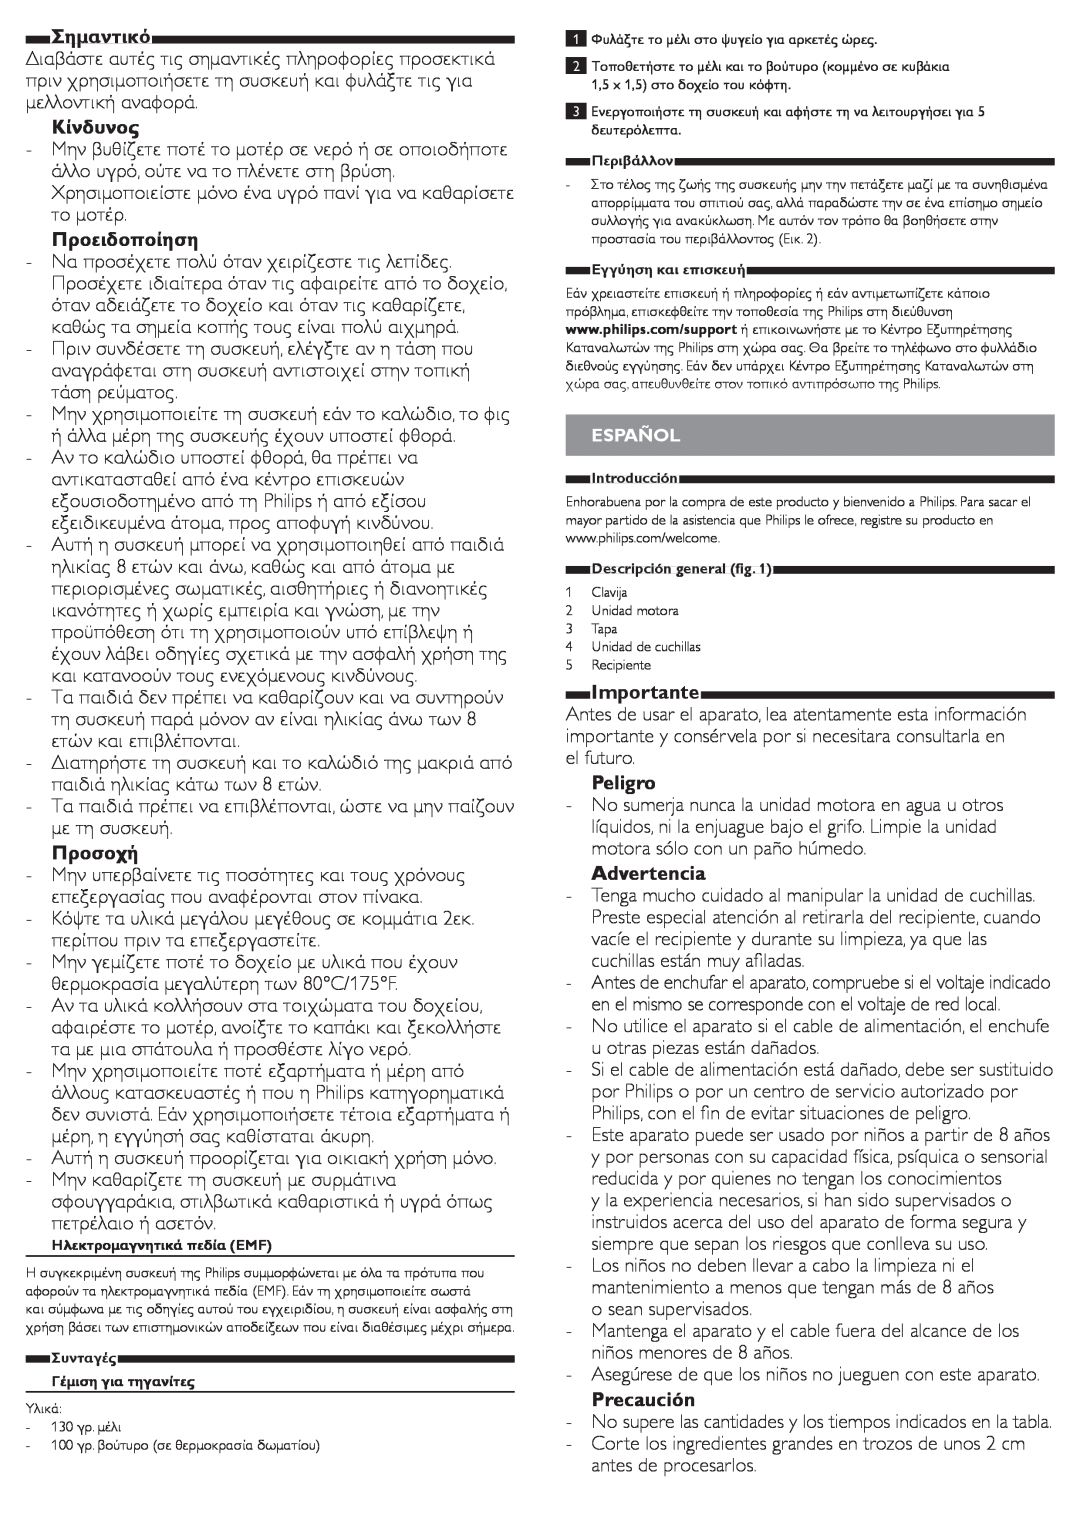 Philips HR1393 user manual Σημαντικό, Importante, Peligro, Advertencia, Precaución 